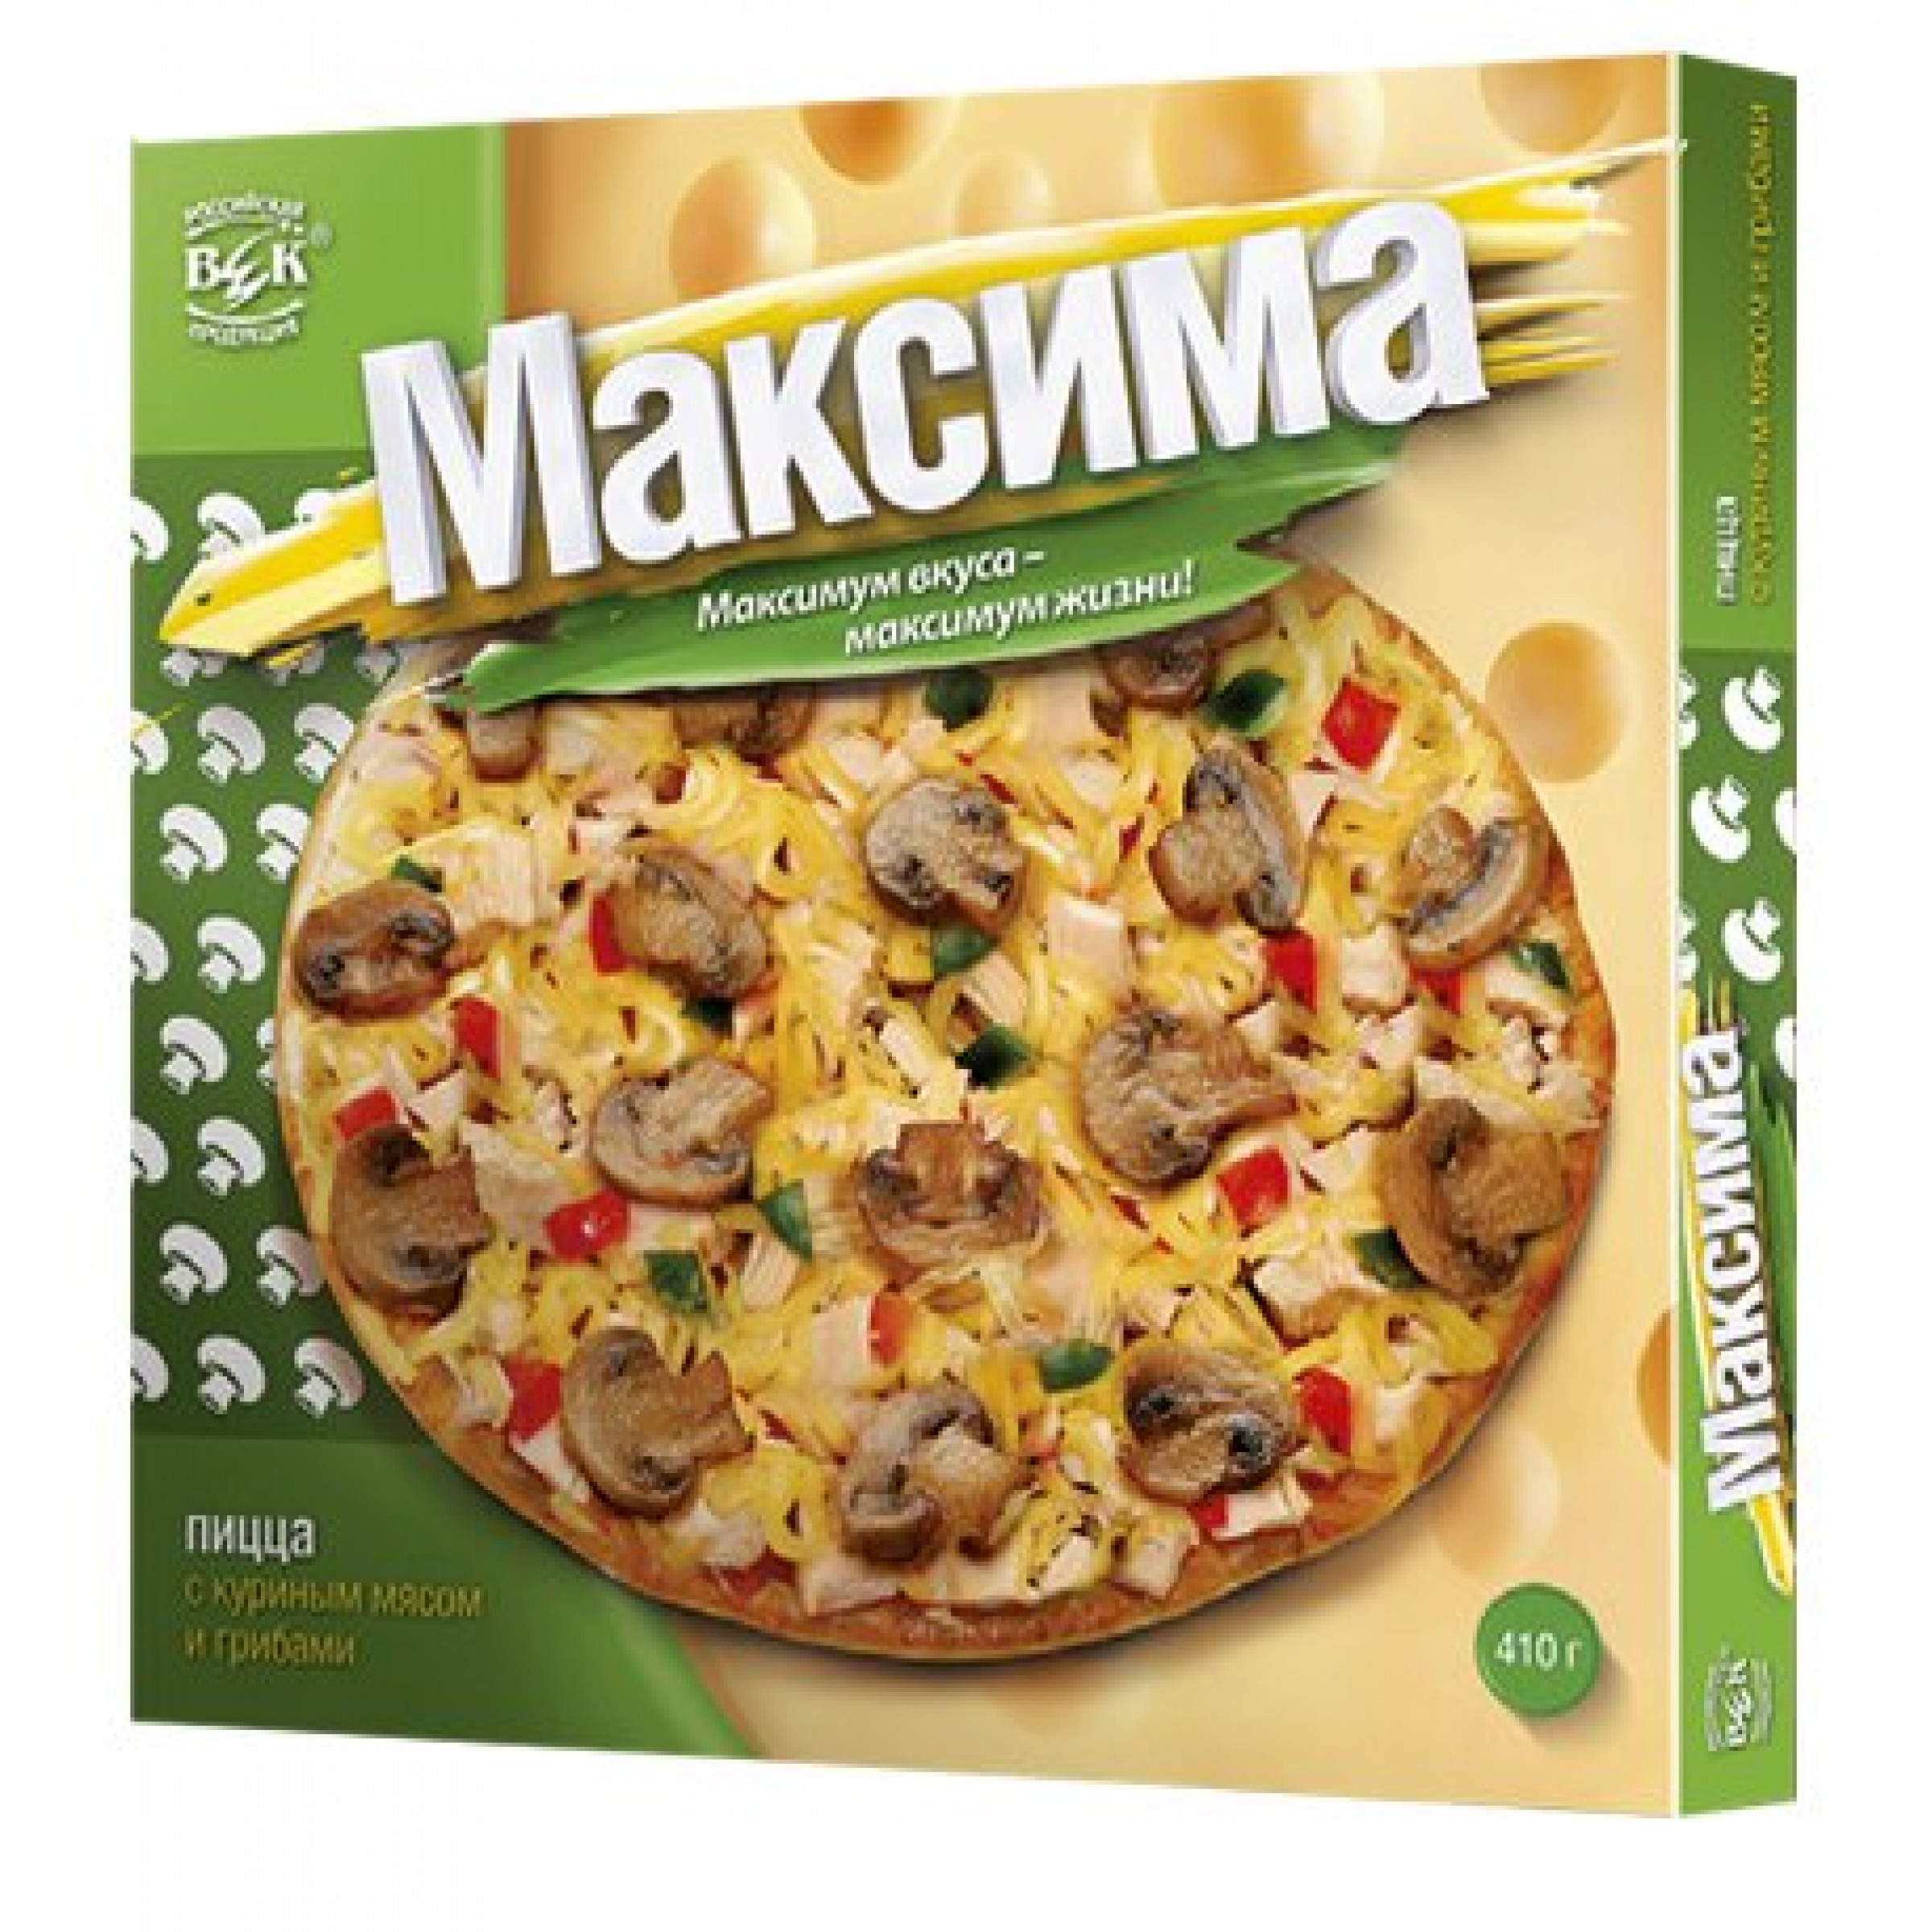 Пицца Максима с куриным мясом и грибами в коробочке, 410гр